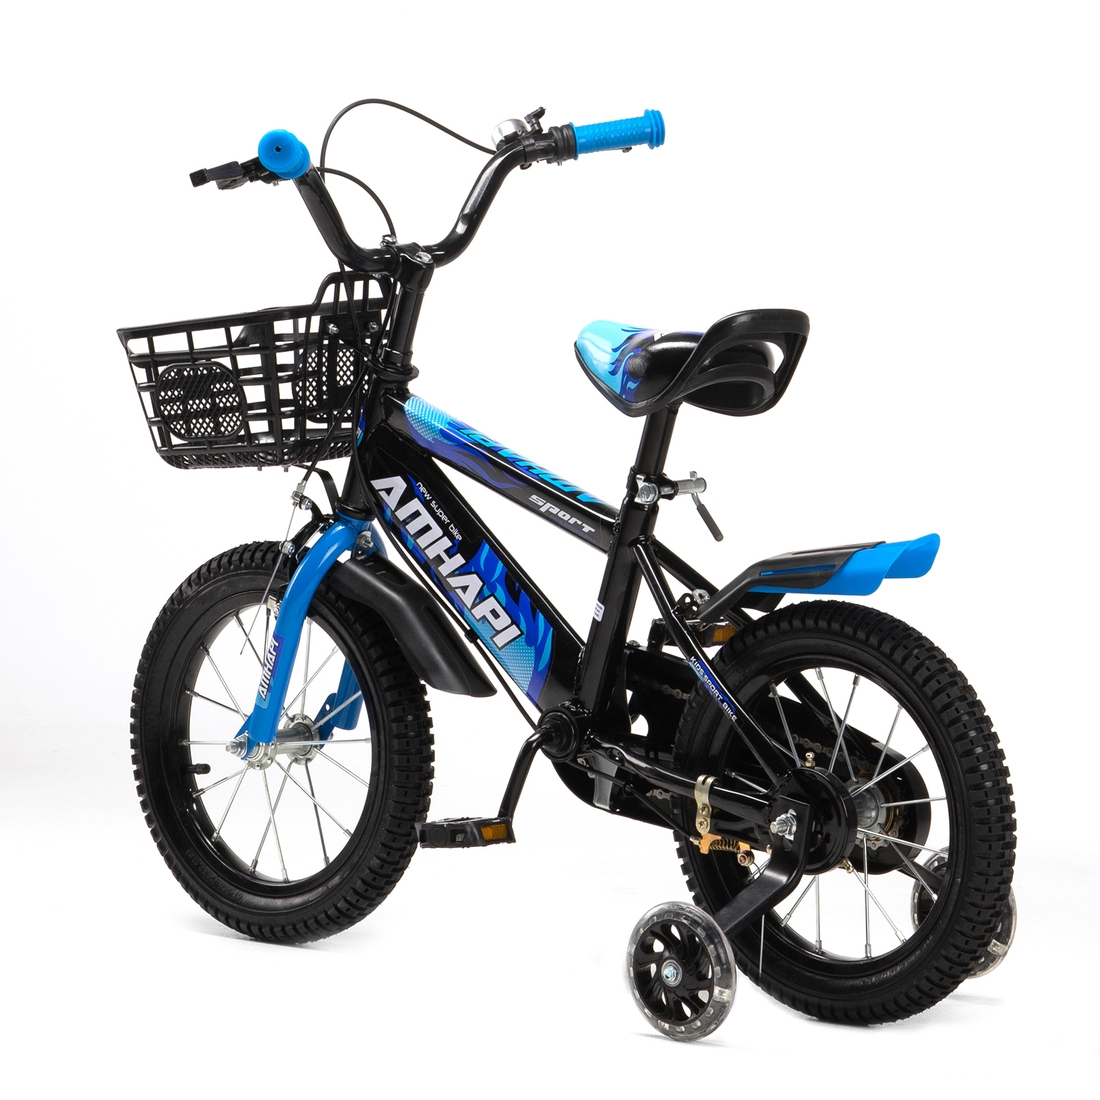 Фото Велосипед дитячий AMHAPI SXI1026026 14" Синій (2000989604358)